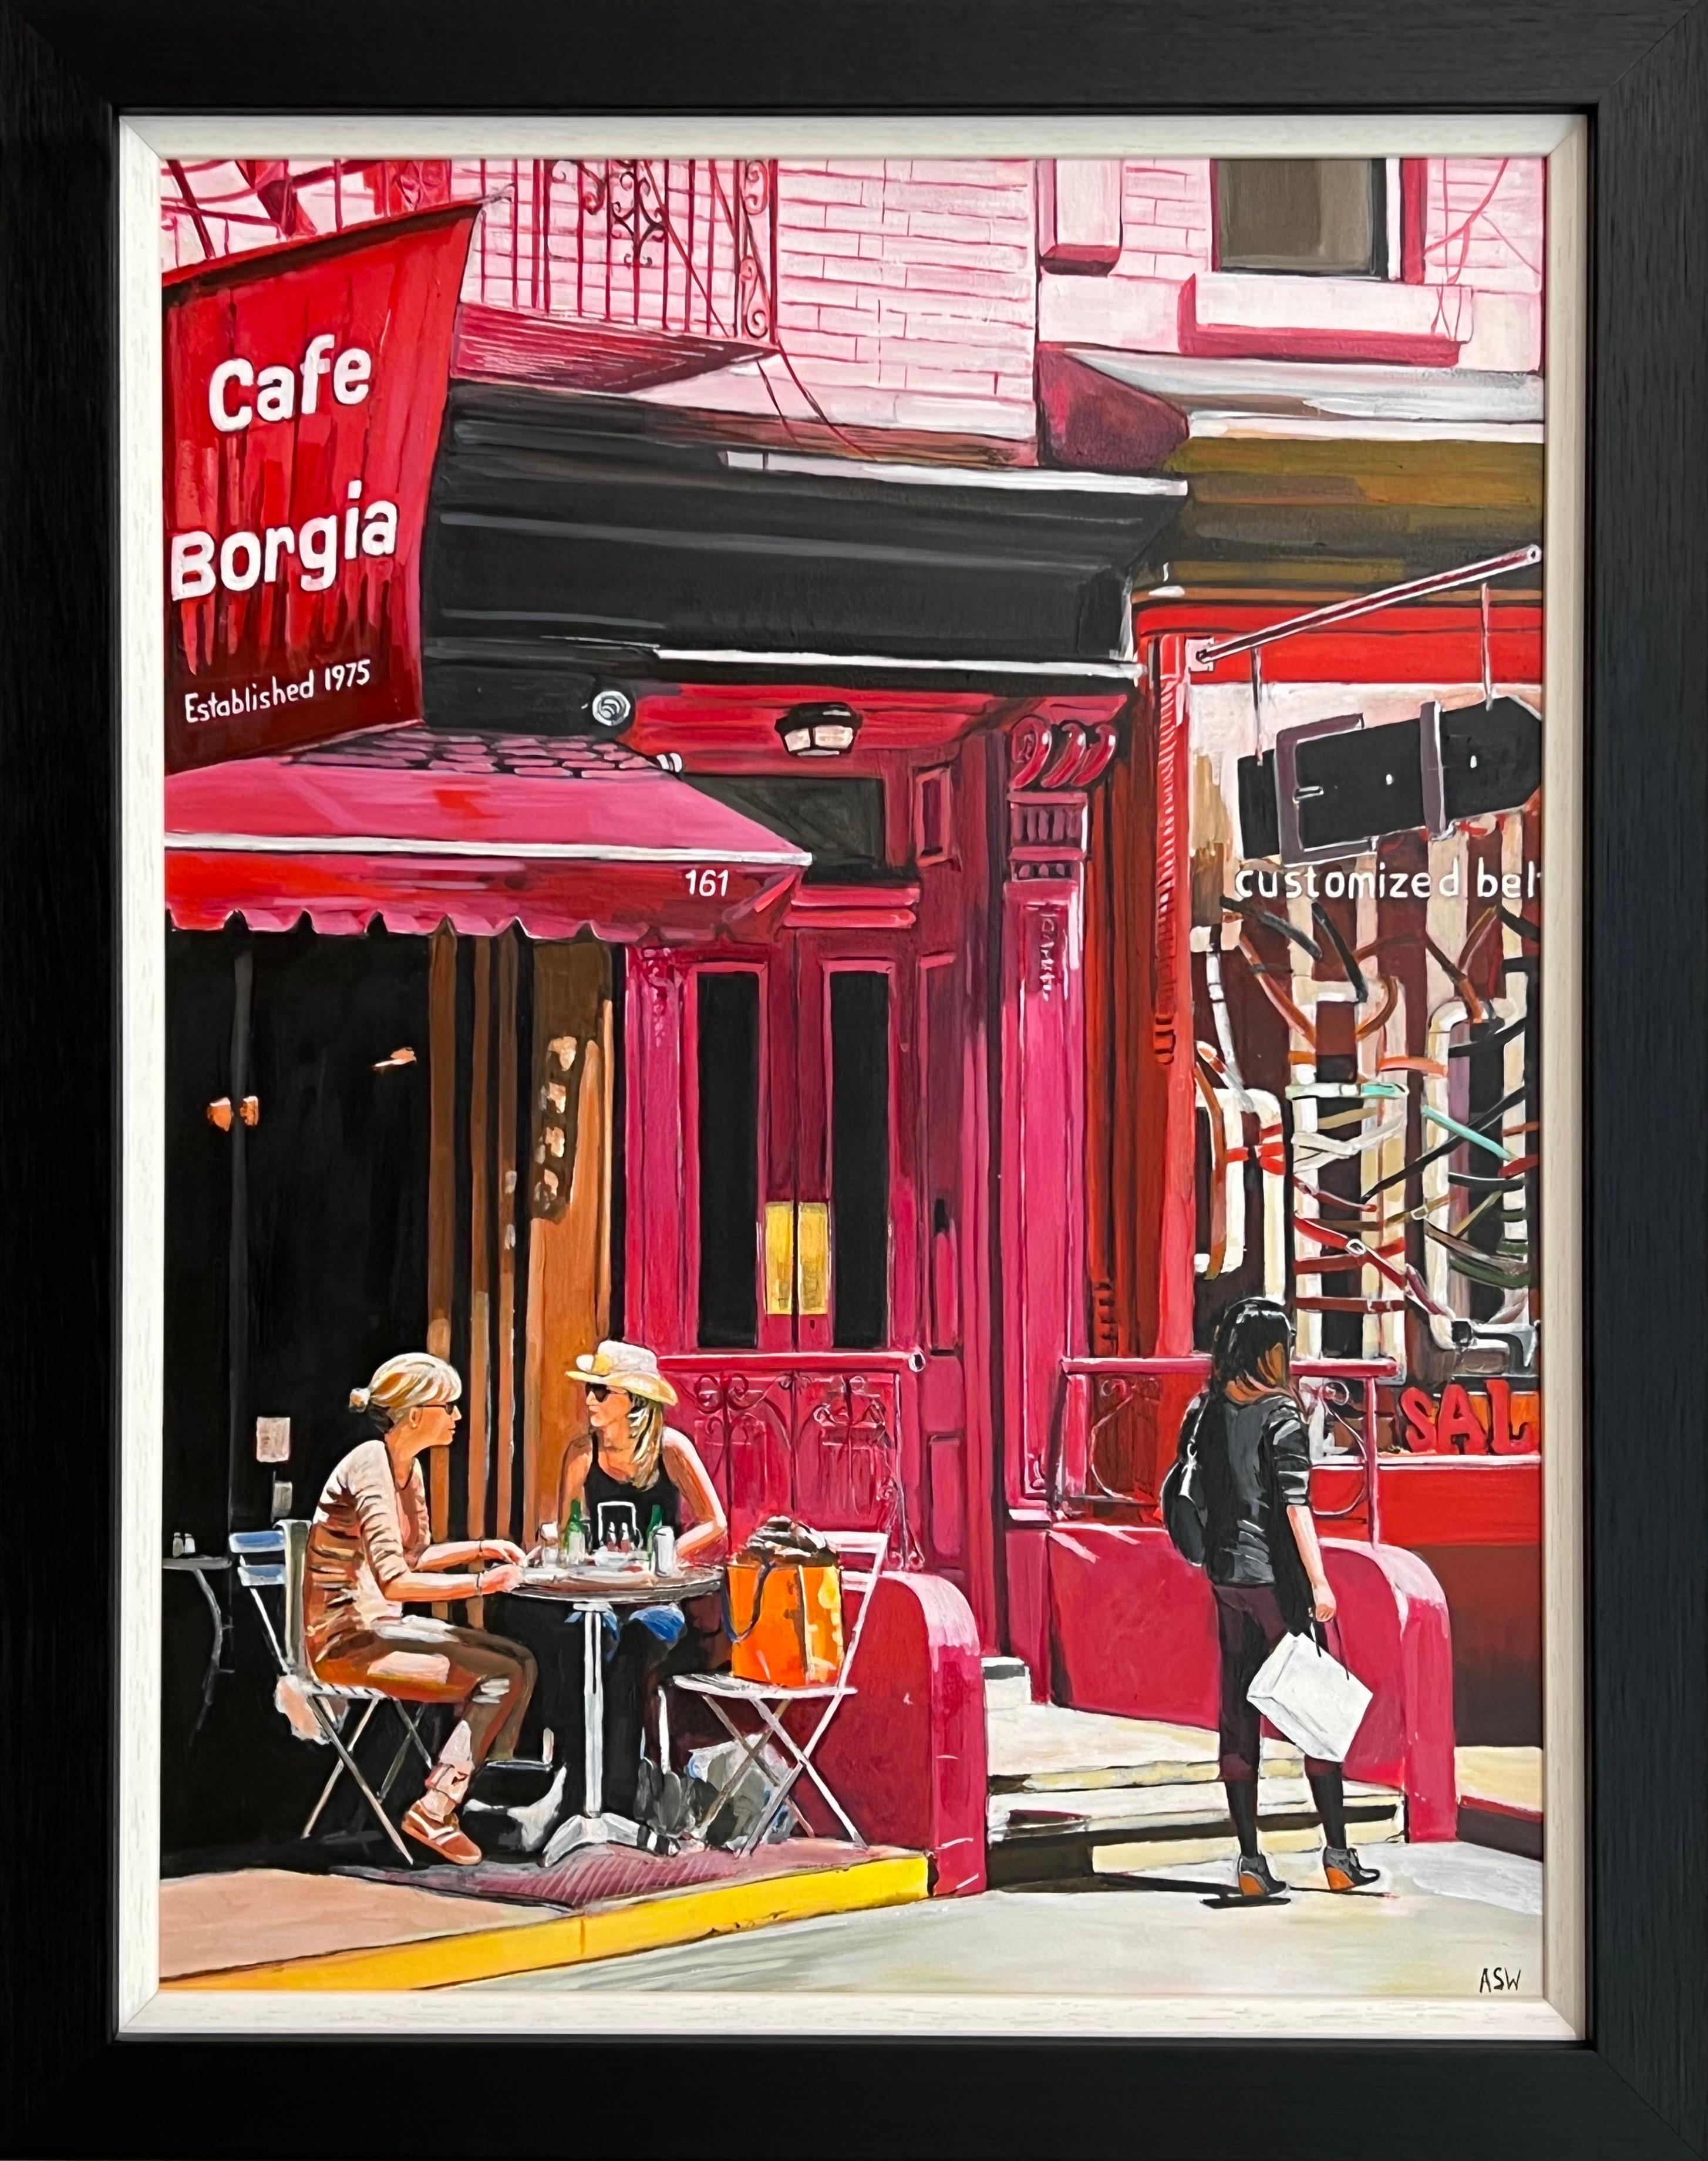 Figurative Painting Angela Wakefield - Cafe Borgia de New York avec des figures féminines par un artiste britannique contemporain